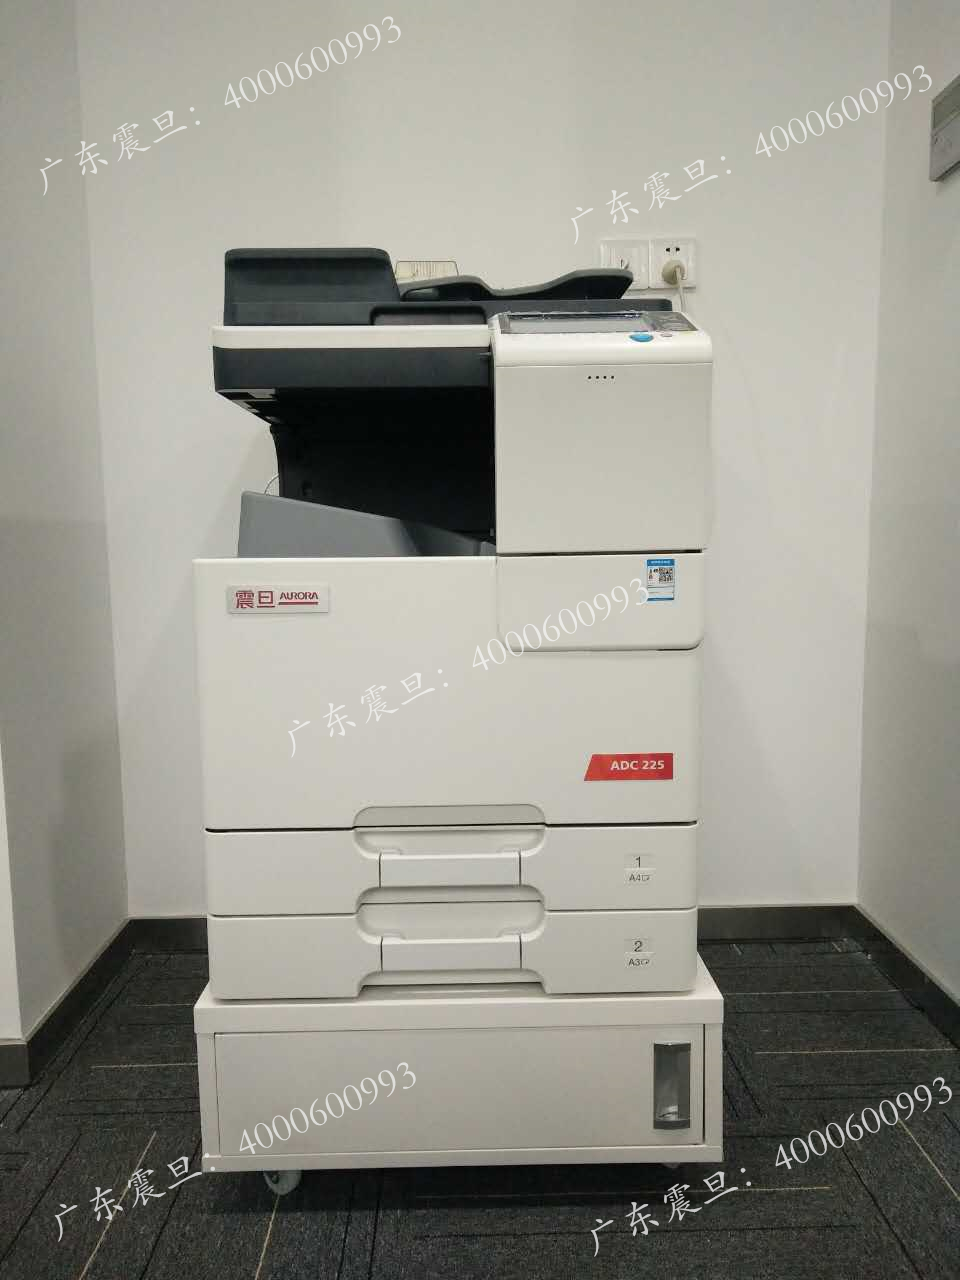 珠江新城某金融公司使用的震旦ADC225复印机